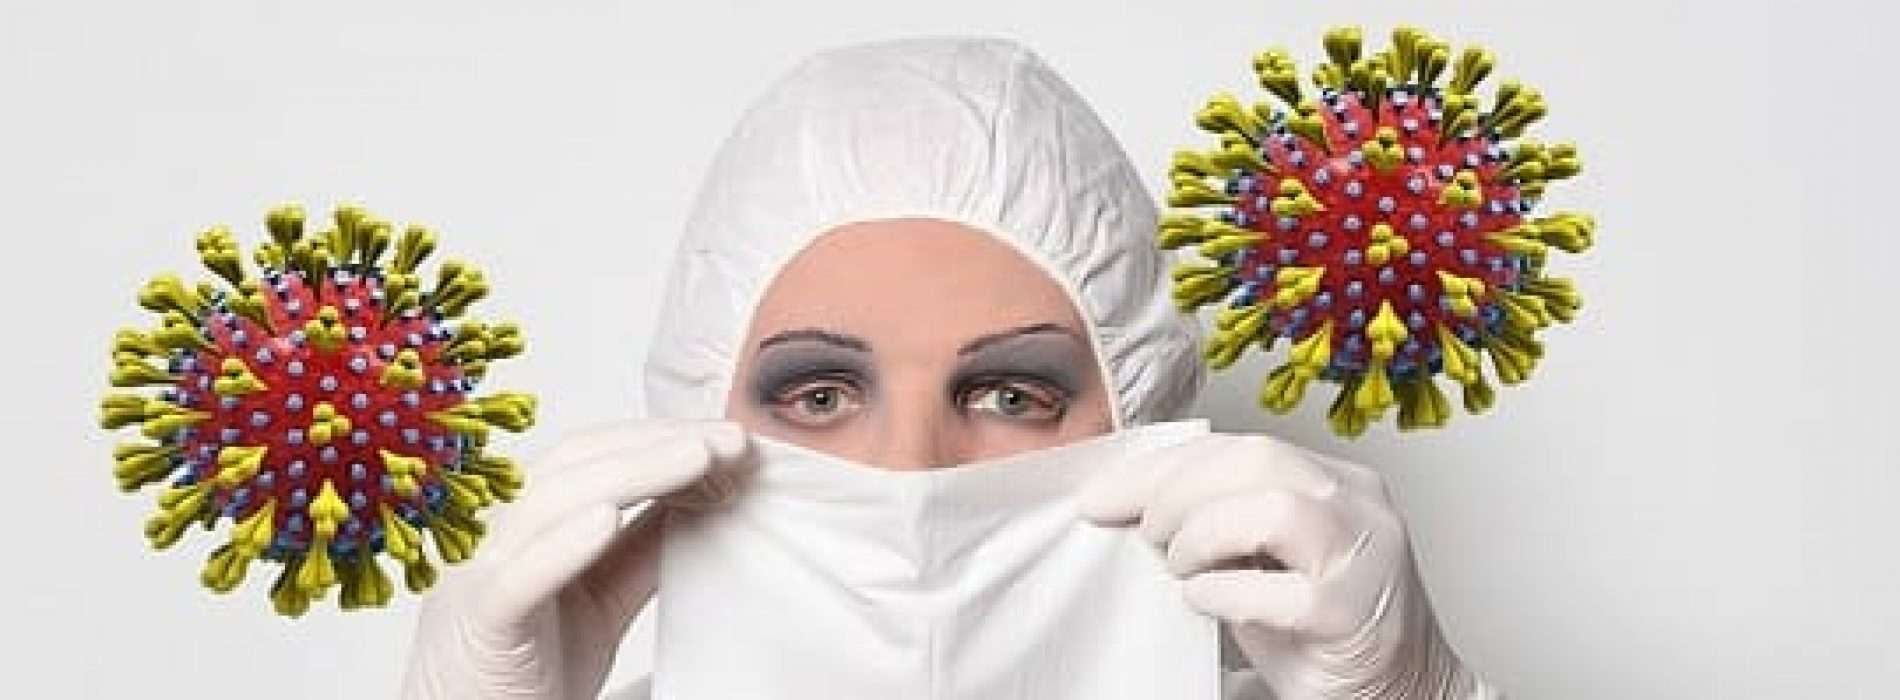 Slik beskytter du deg mot coronaviruset og andre luftveisinfeksjoner